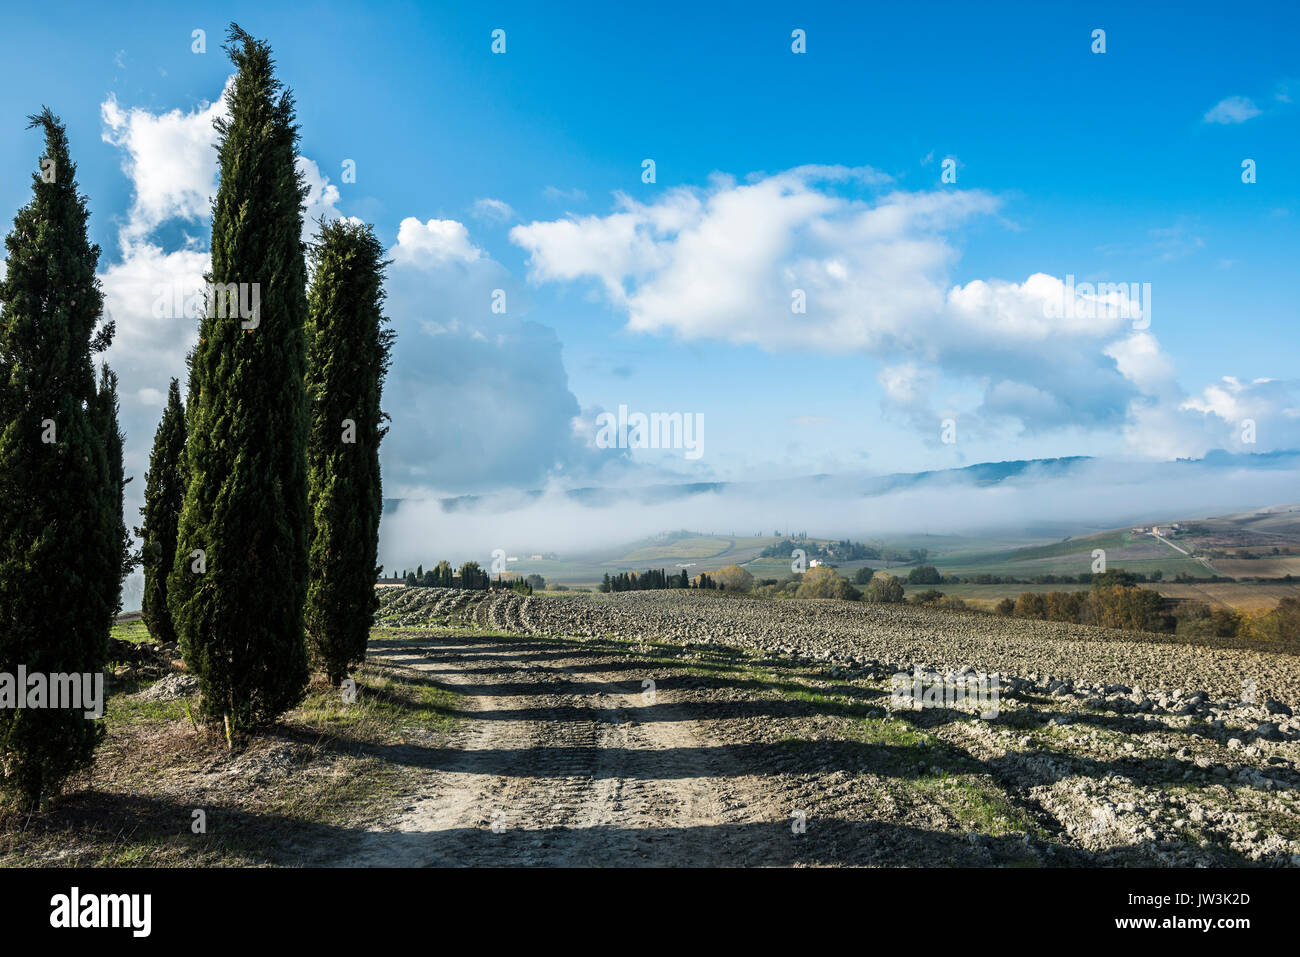 Fermer la vue de la Toscane labouré le sol fertile et quelques cyprès vert avec un bleu ciel nuageux Banque D'Images